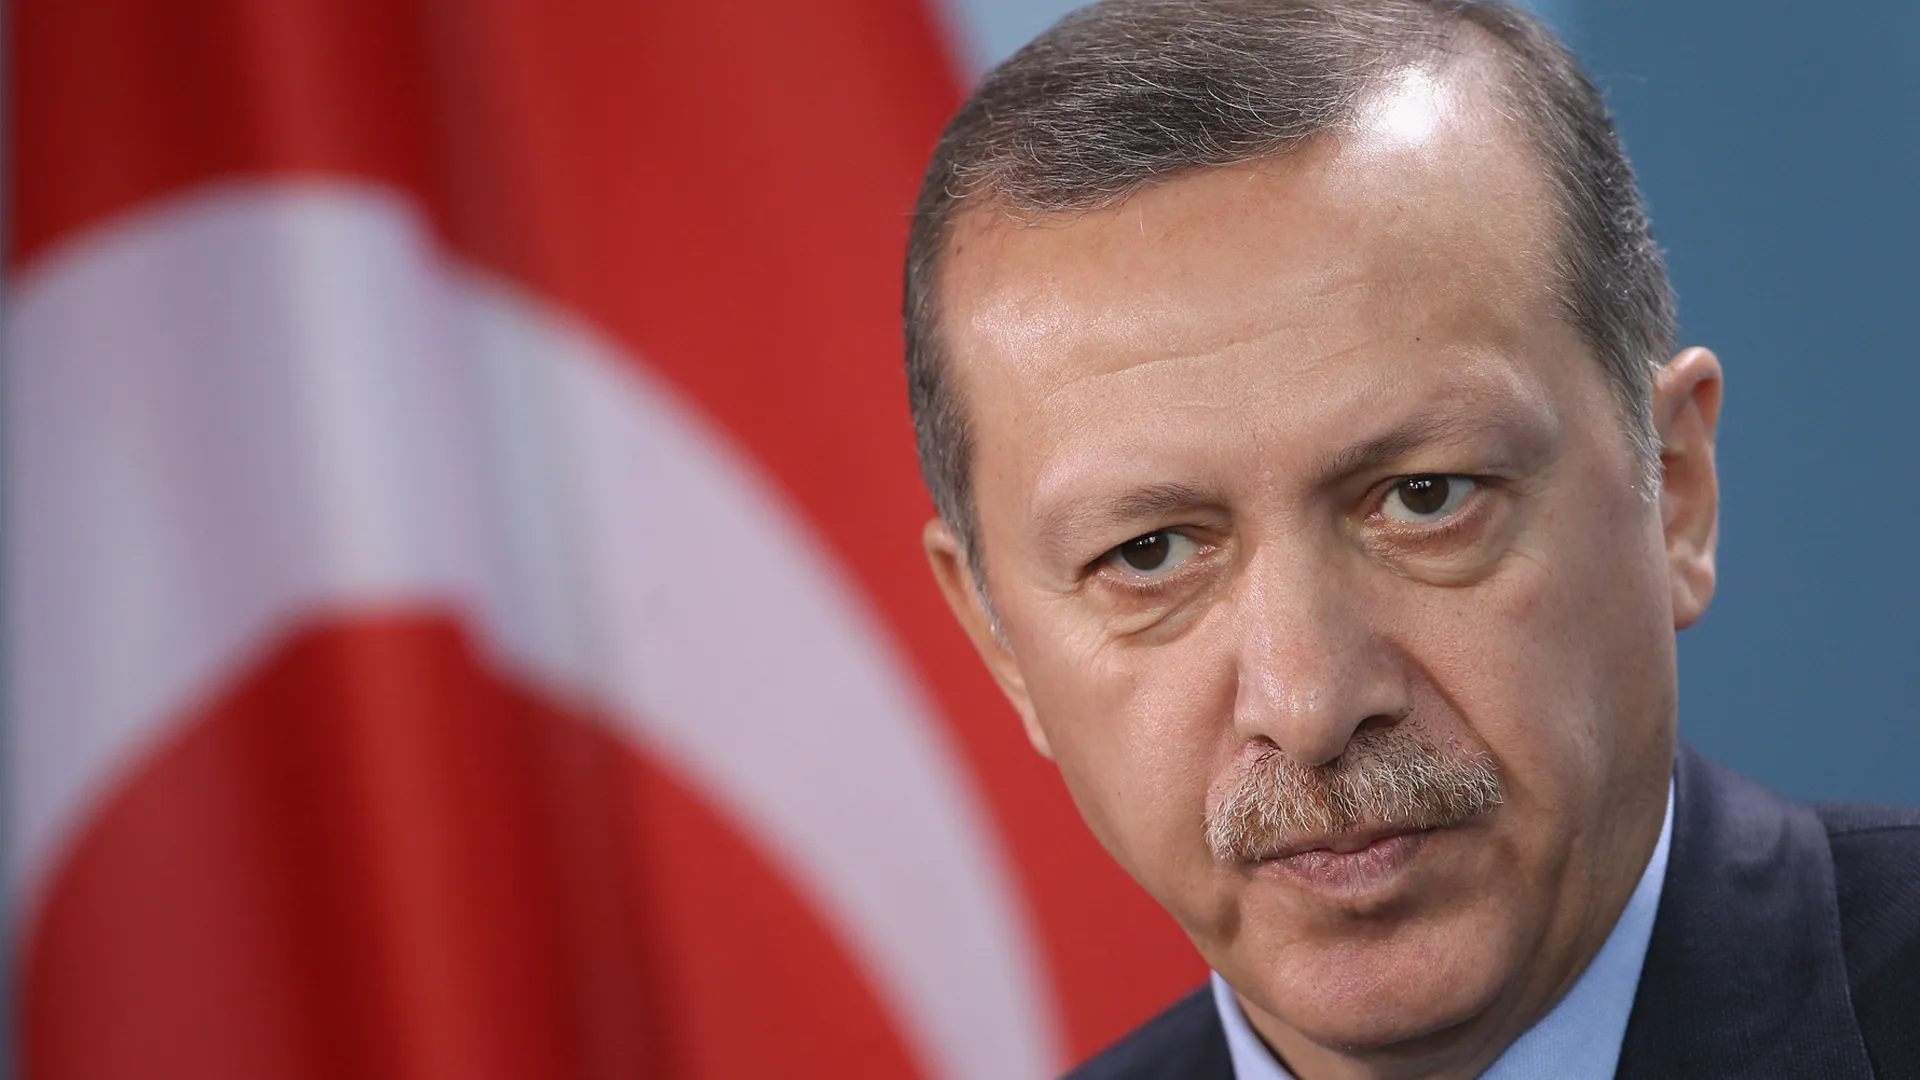 مفكر إسلامي سوري يوجه رسالة مفتوحة للرئيس "أردوغان" حول التعامل مع السوريين في تركيا